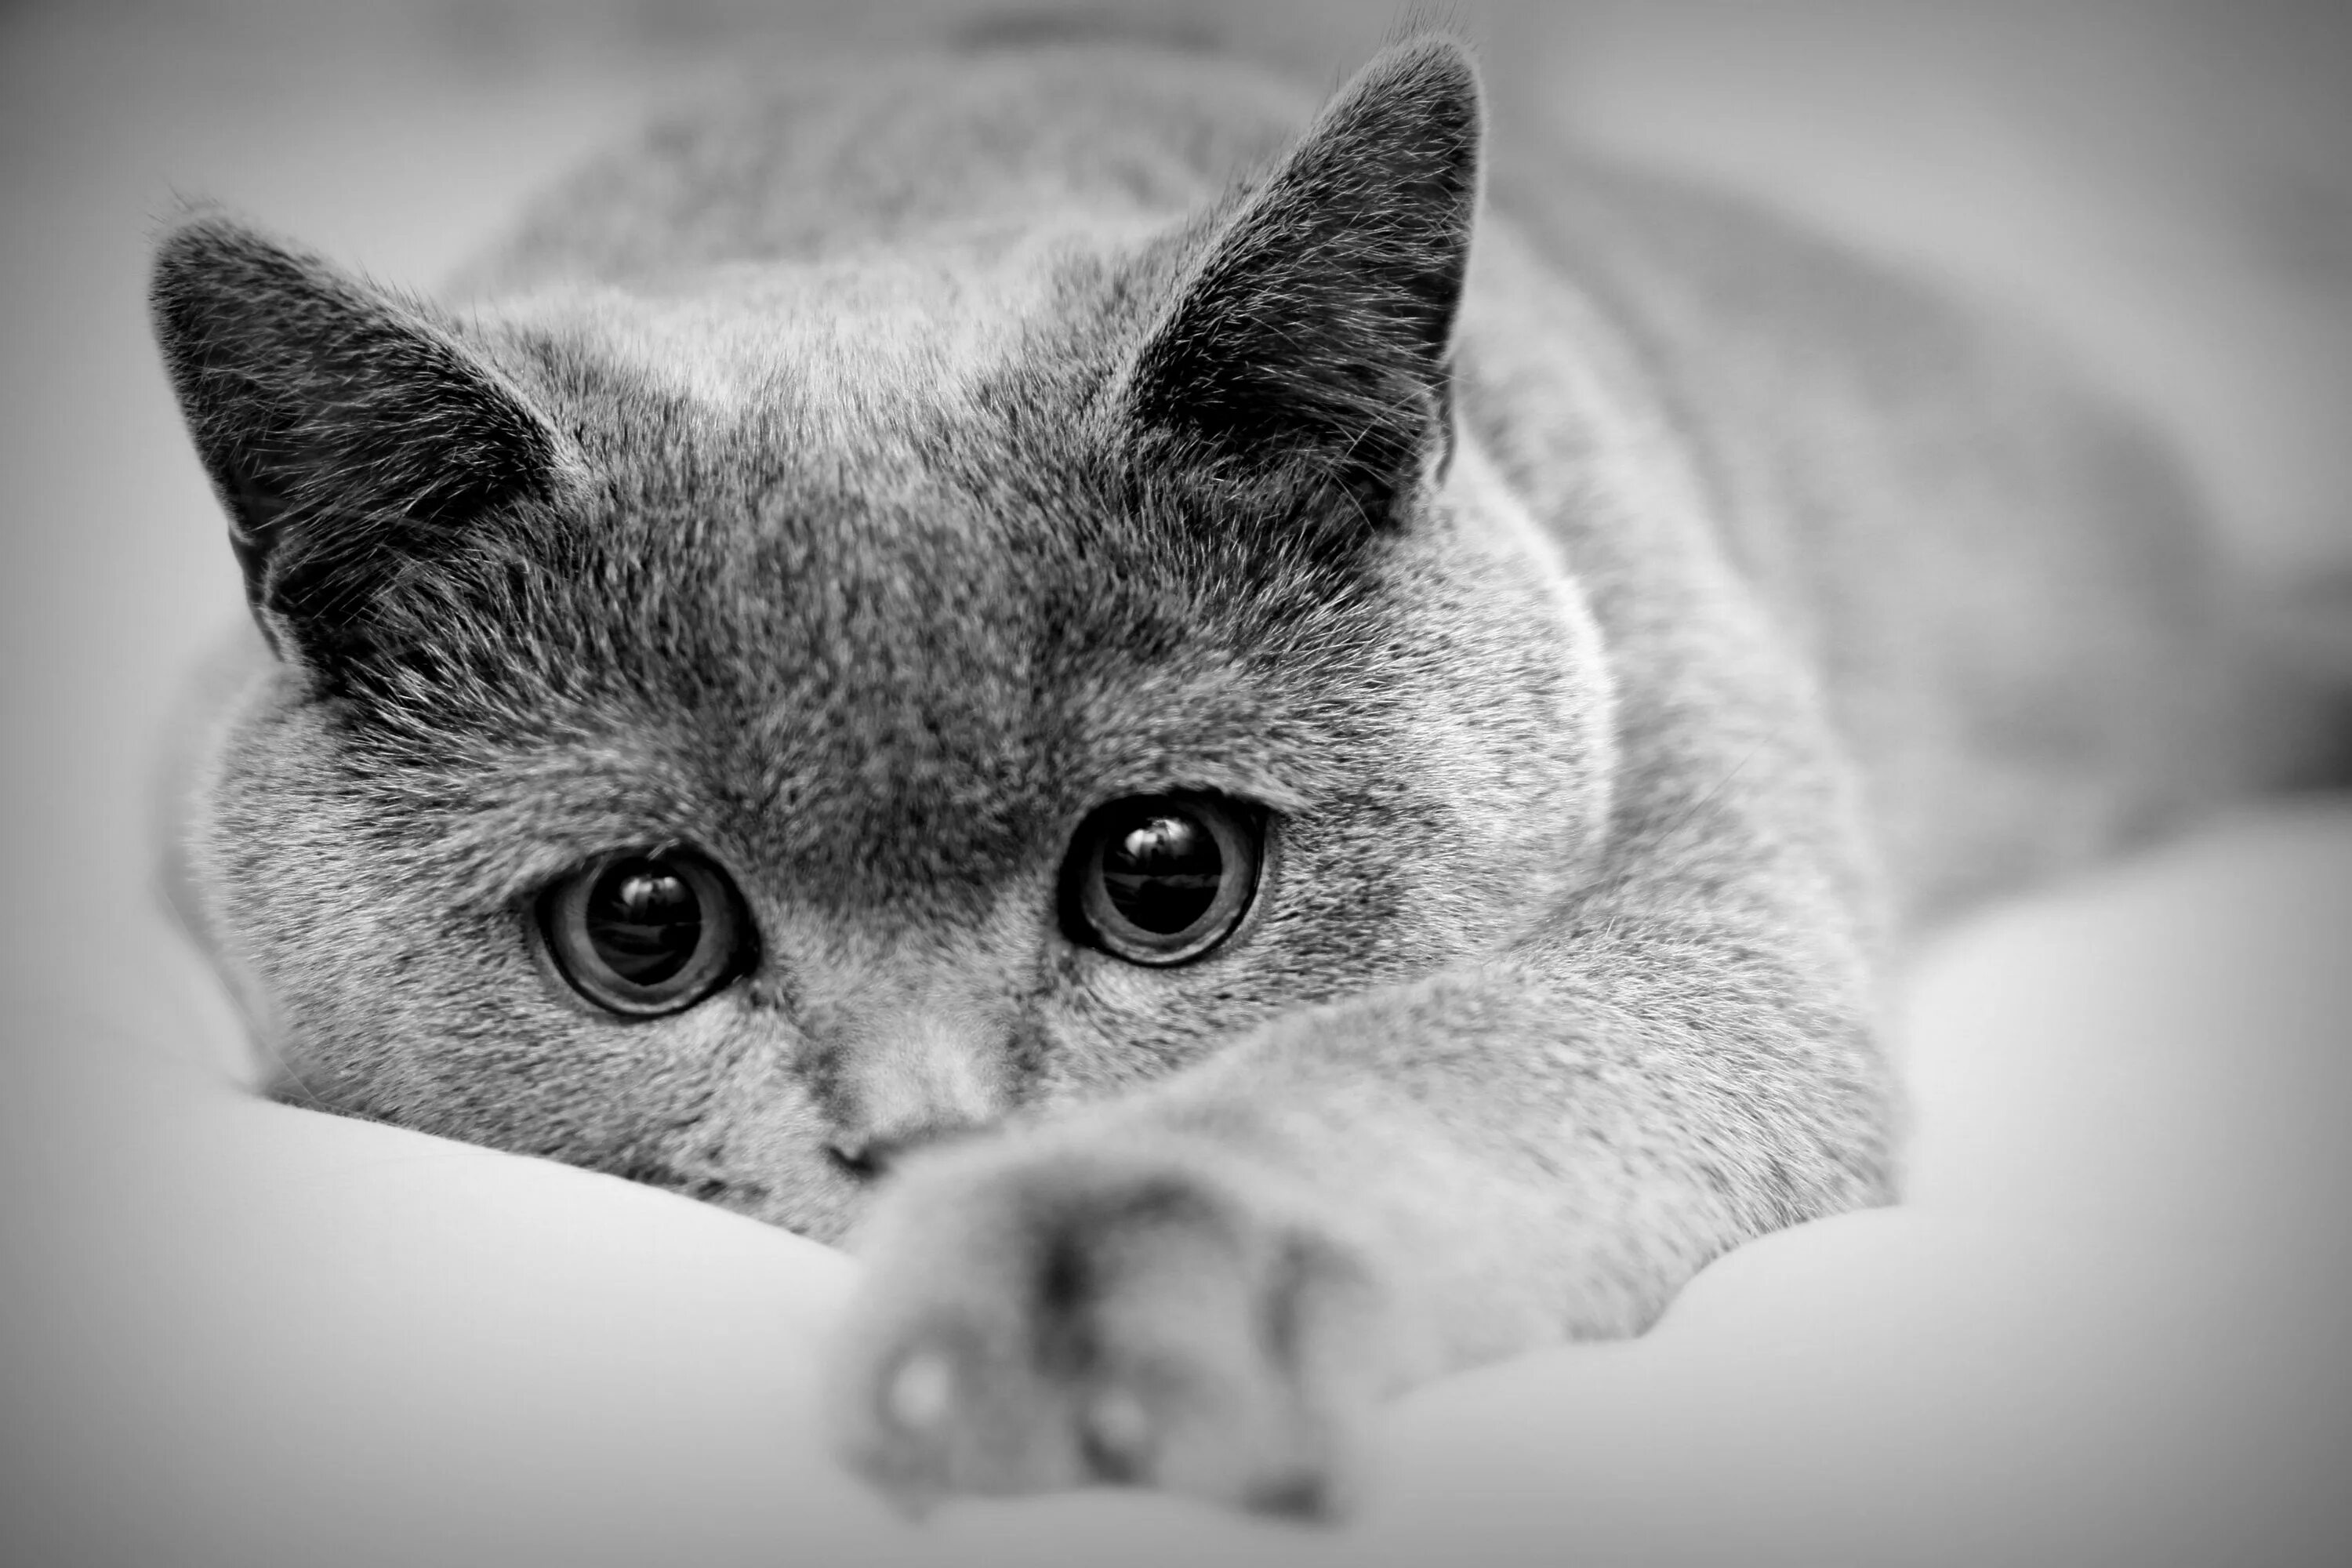 Можно картинки. Красивые черно белые картинки. Красивая картинка чеонобел. Грустная кошка. Скучающий кот.